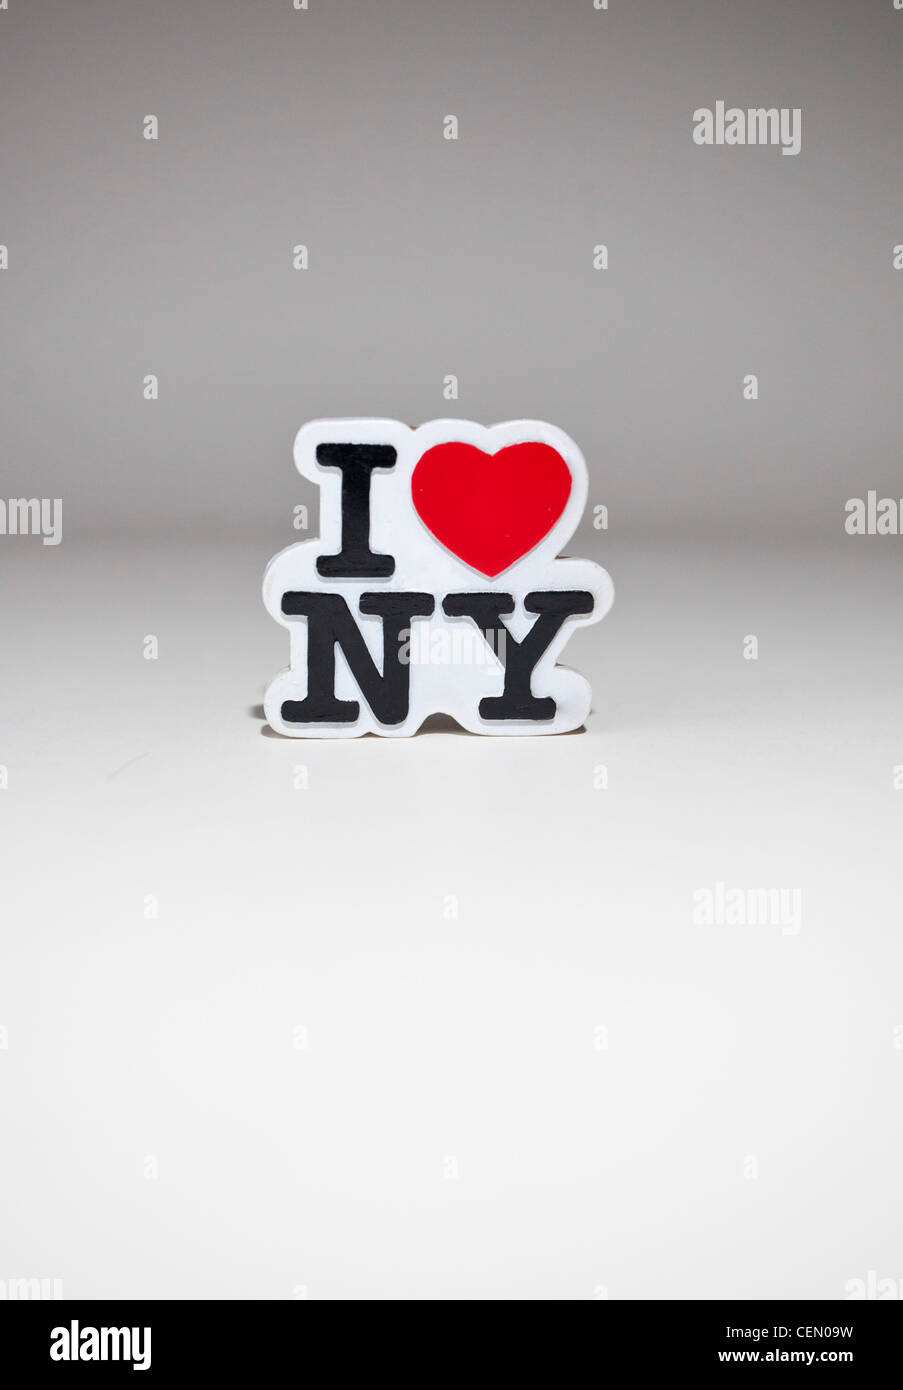 I Love NY sign Stock Photo